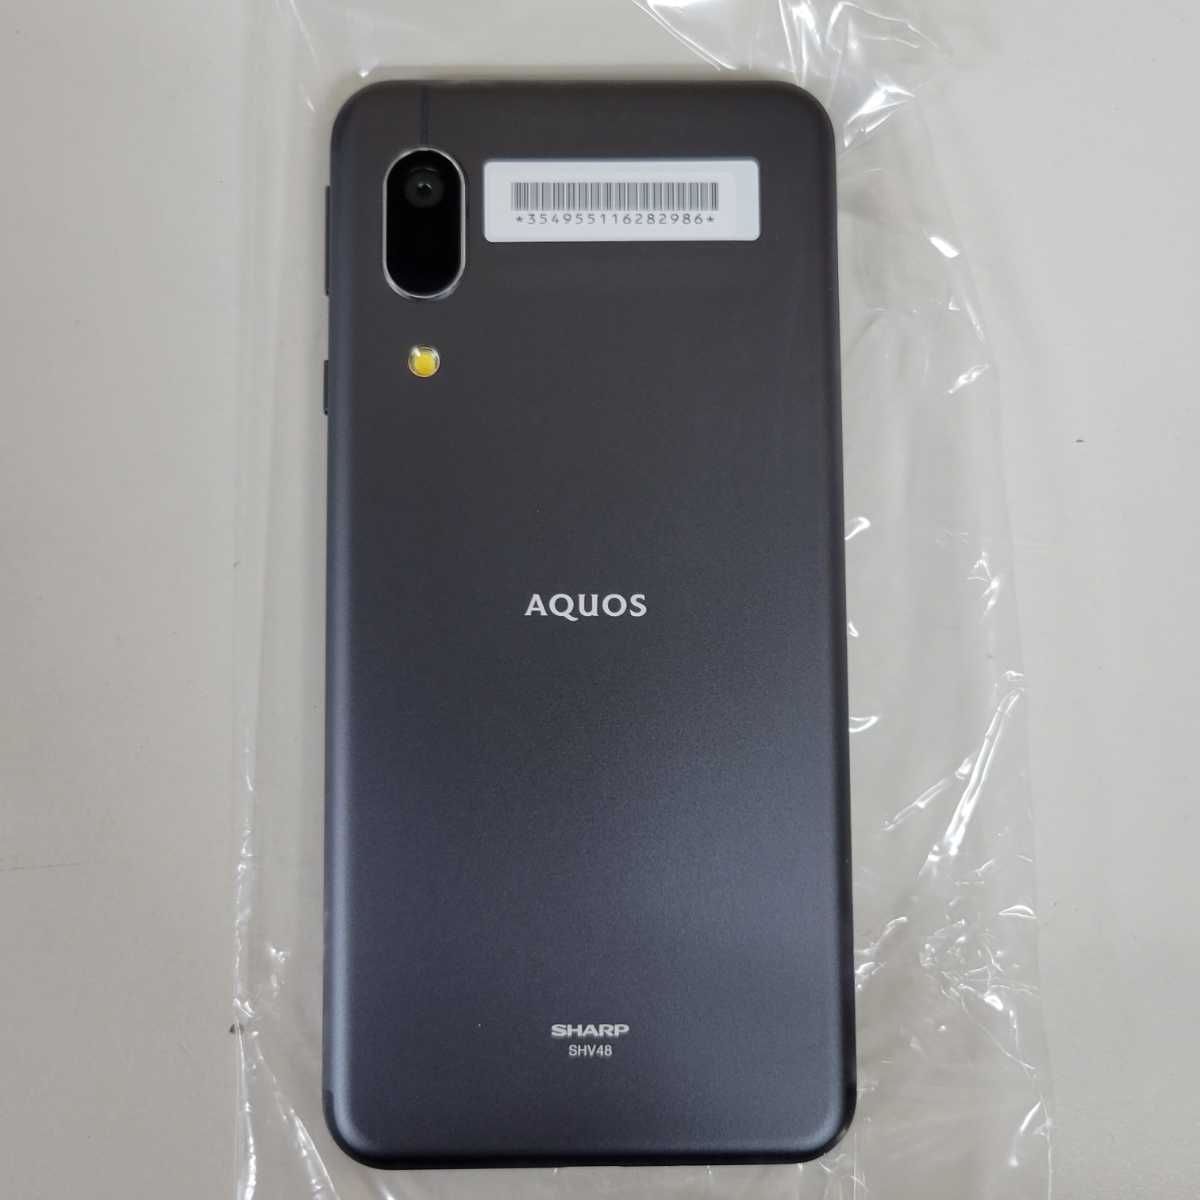 1円~ 品 SHARP AQUOS sense3 basic SHV48 BLACK ブラック Android 